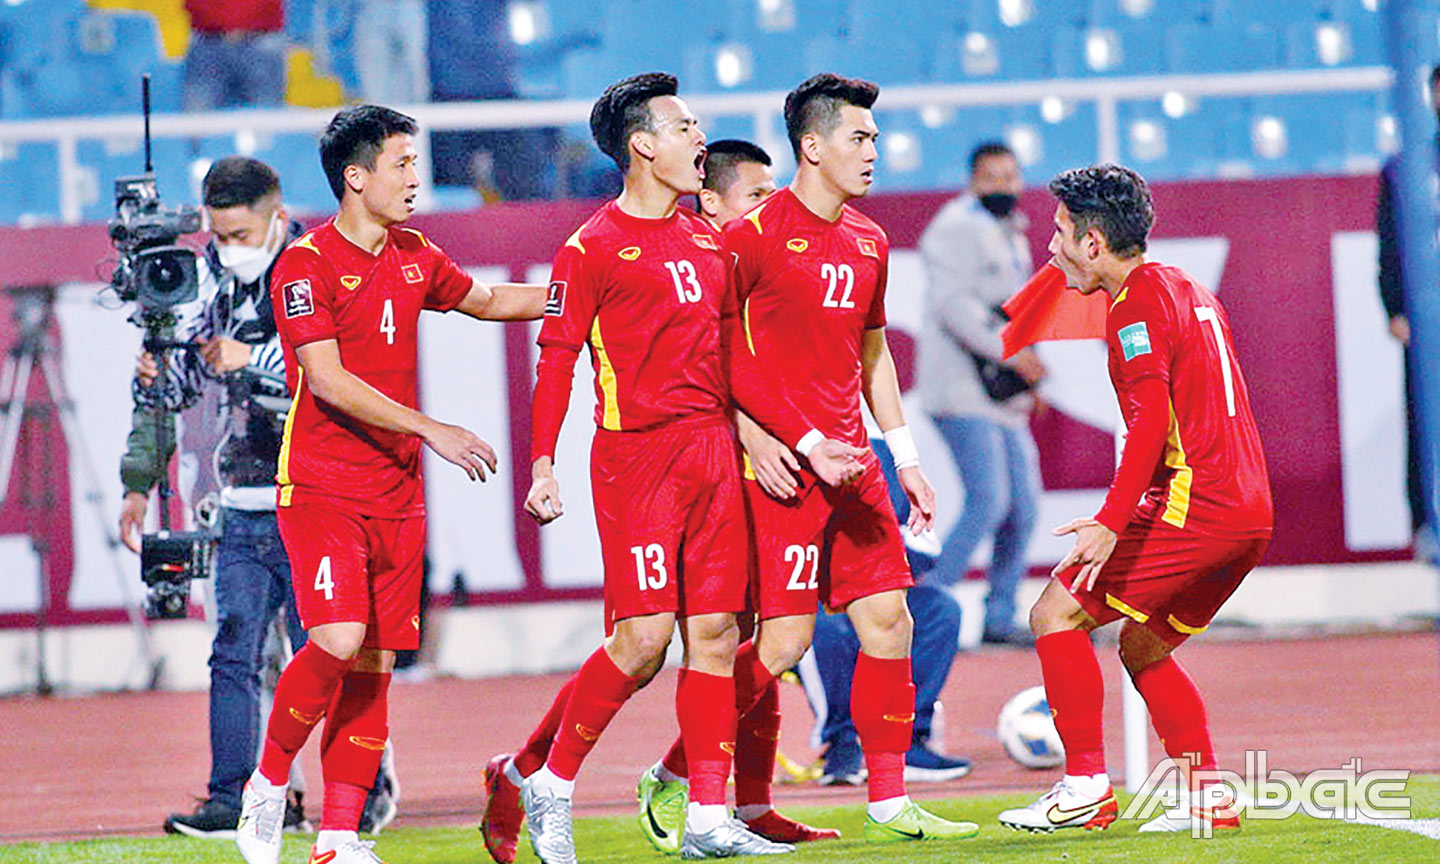 Khó kỳ vọng Đội tuyển Việt Nam trình diễn lối chơi mới với những nhân tố cũ như hiện tại.